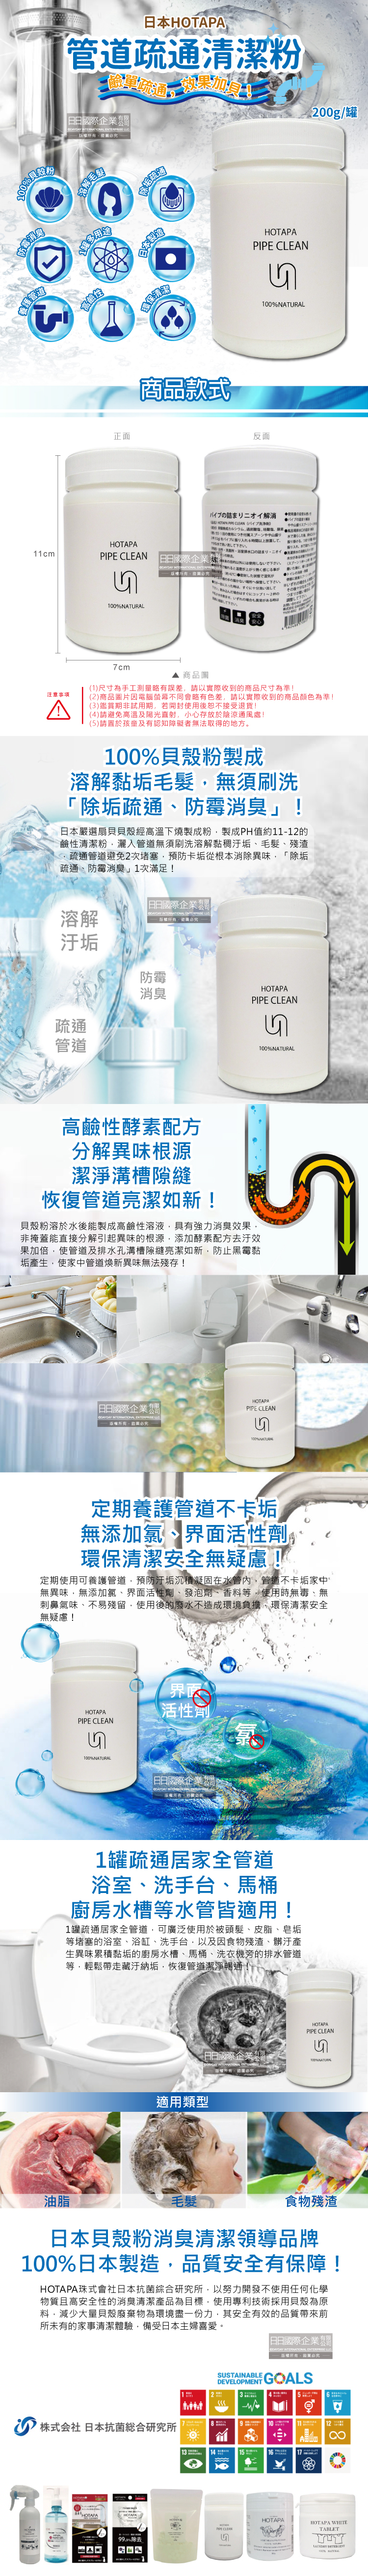 (清潔-管道)日本HOTAPA-排水管清潔粉200g罐裝介紹圖